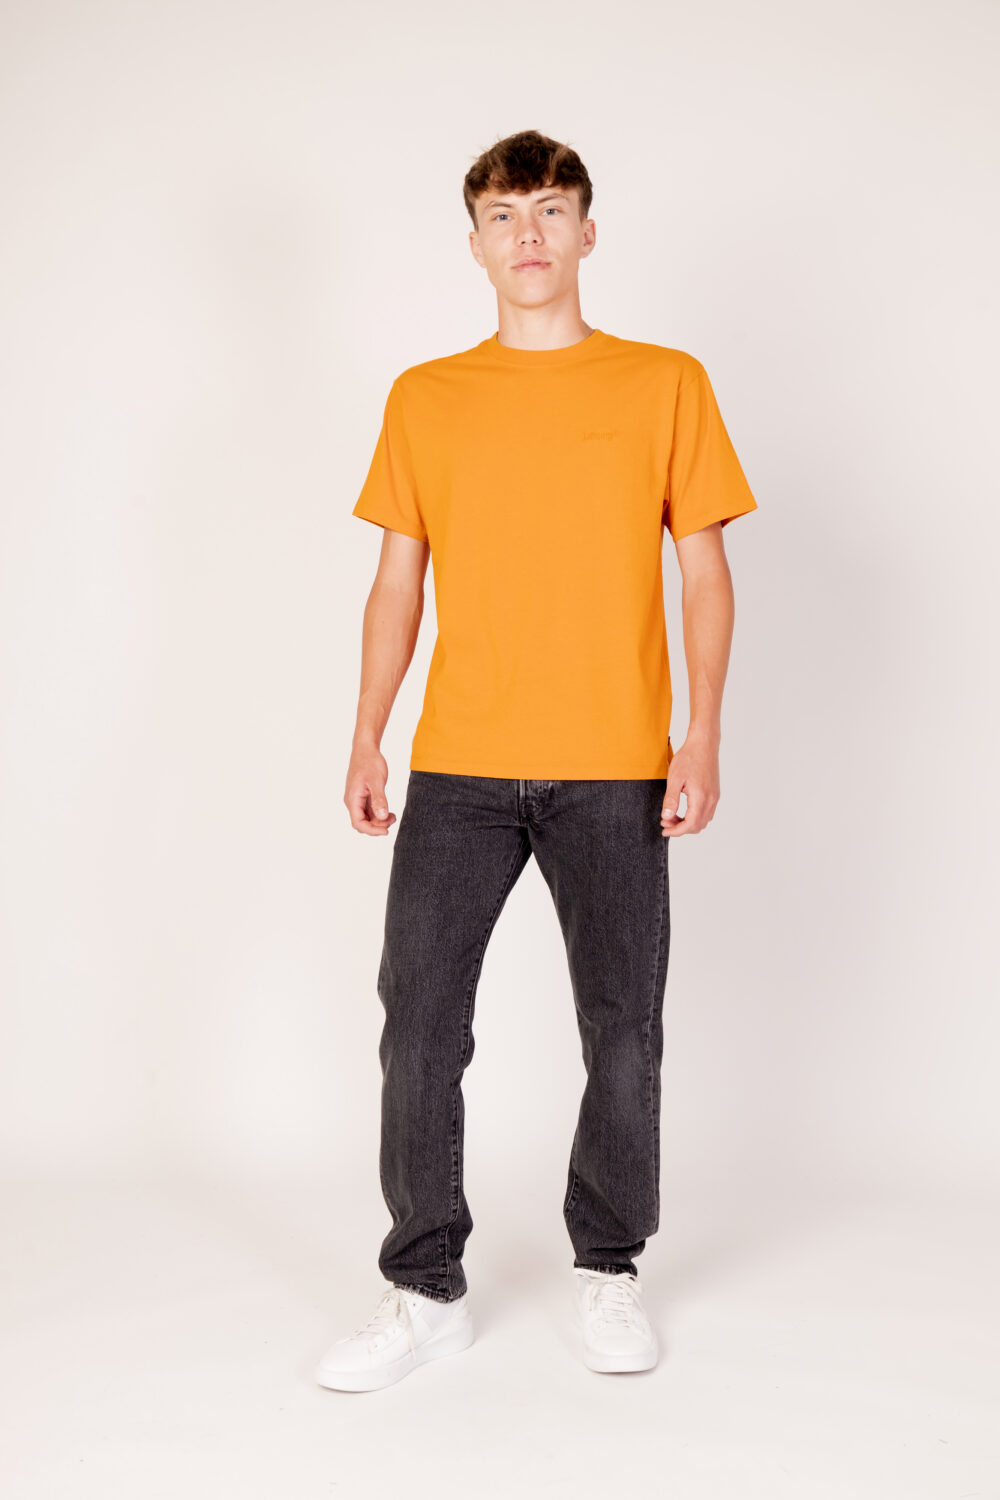 T-shirt Levi's® red tab vintage tee Arancione - Foto 5